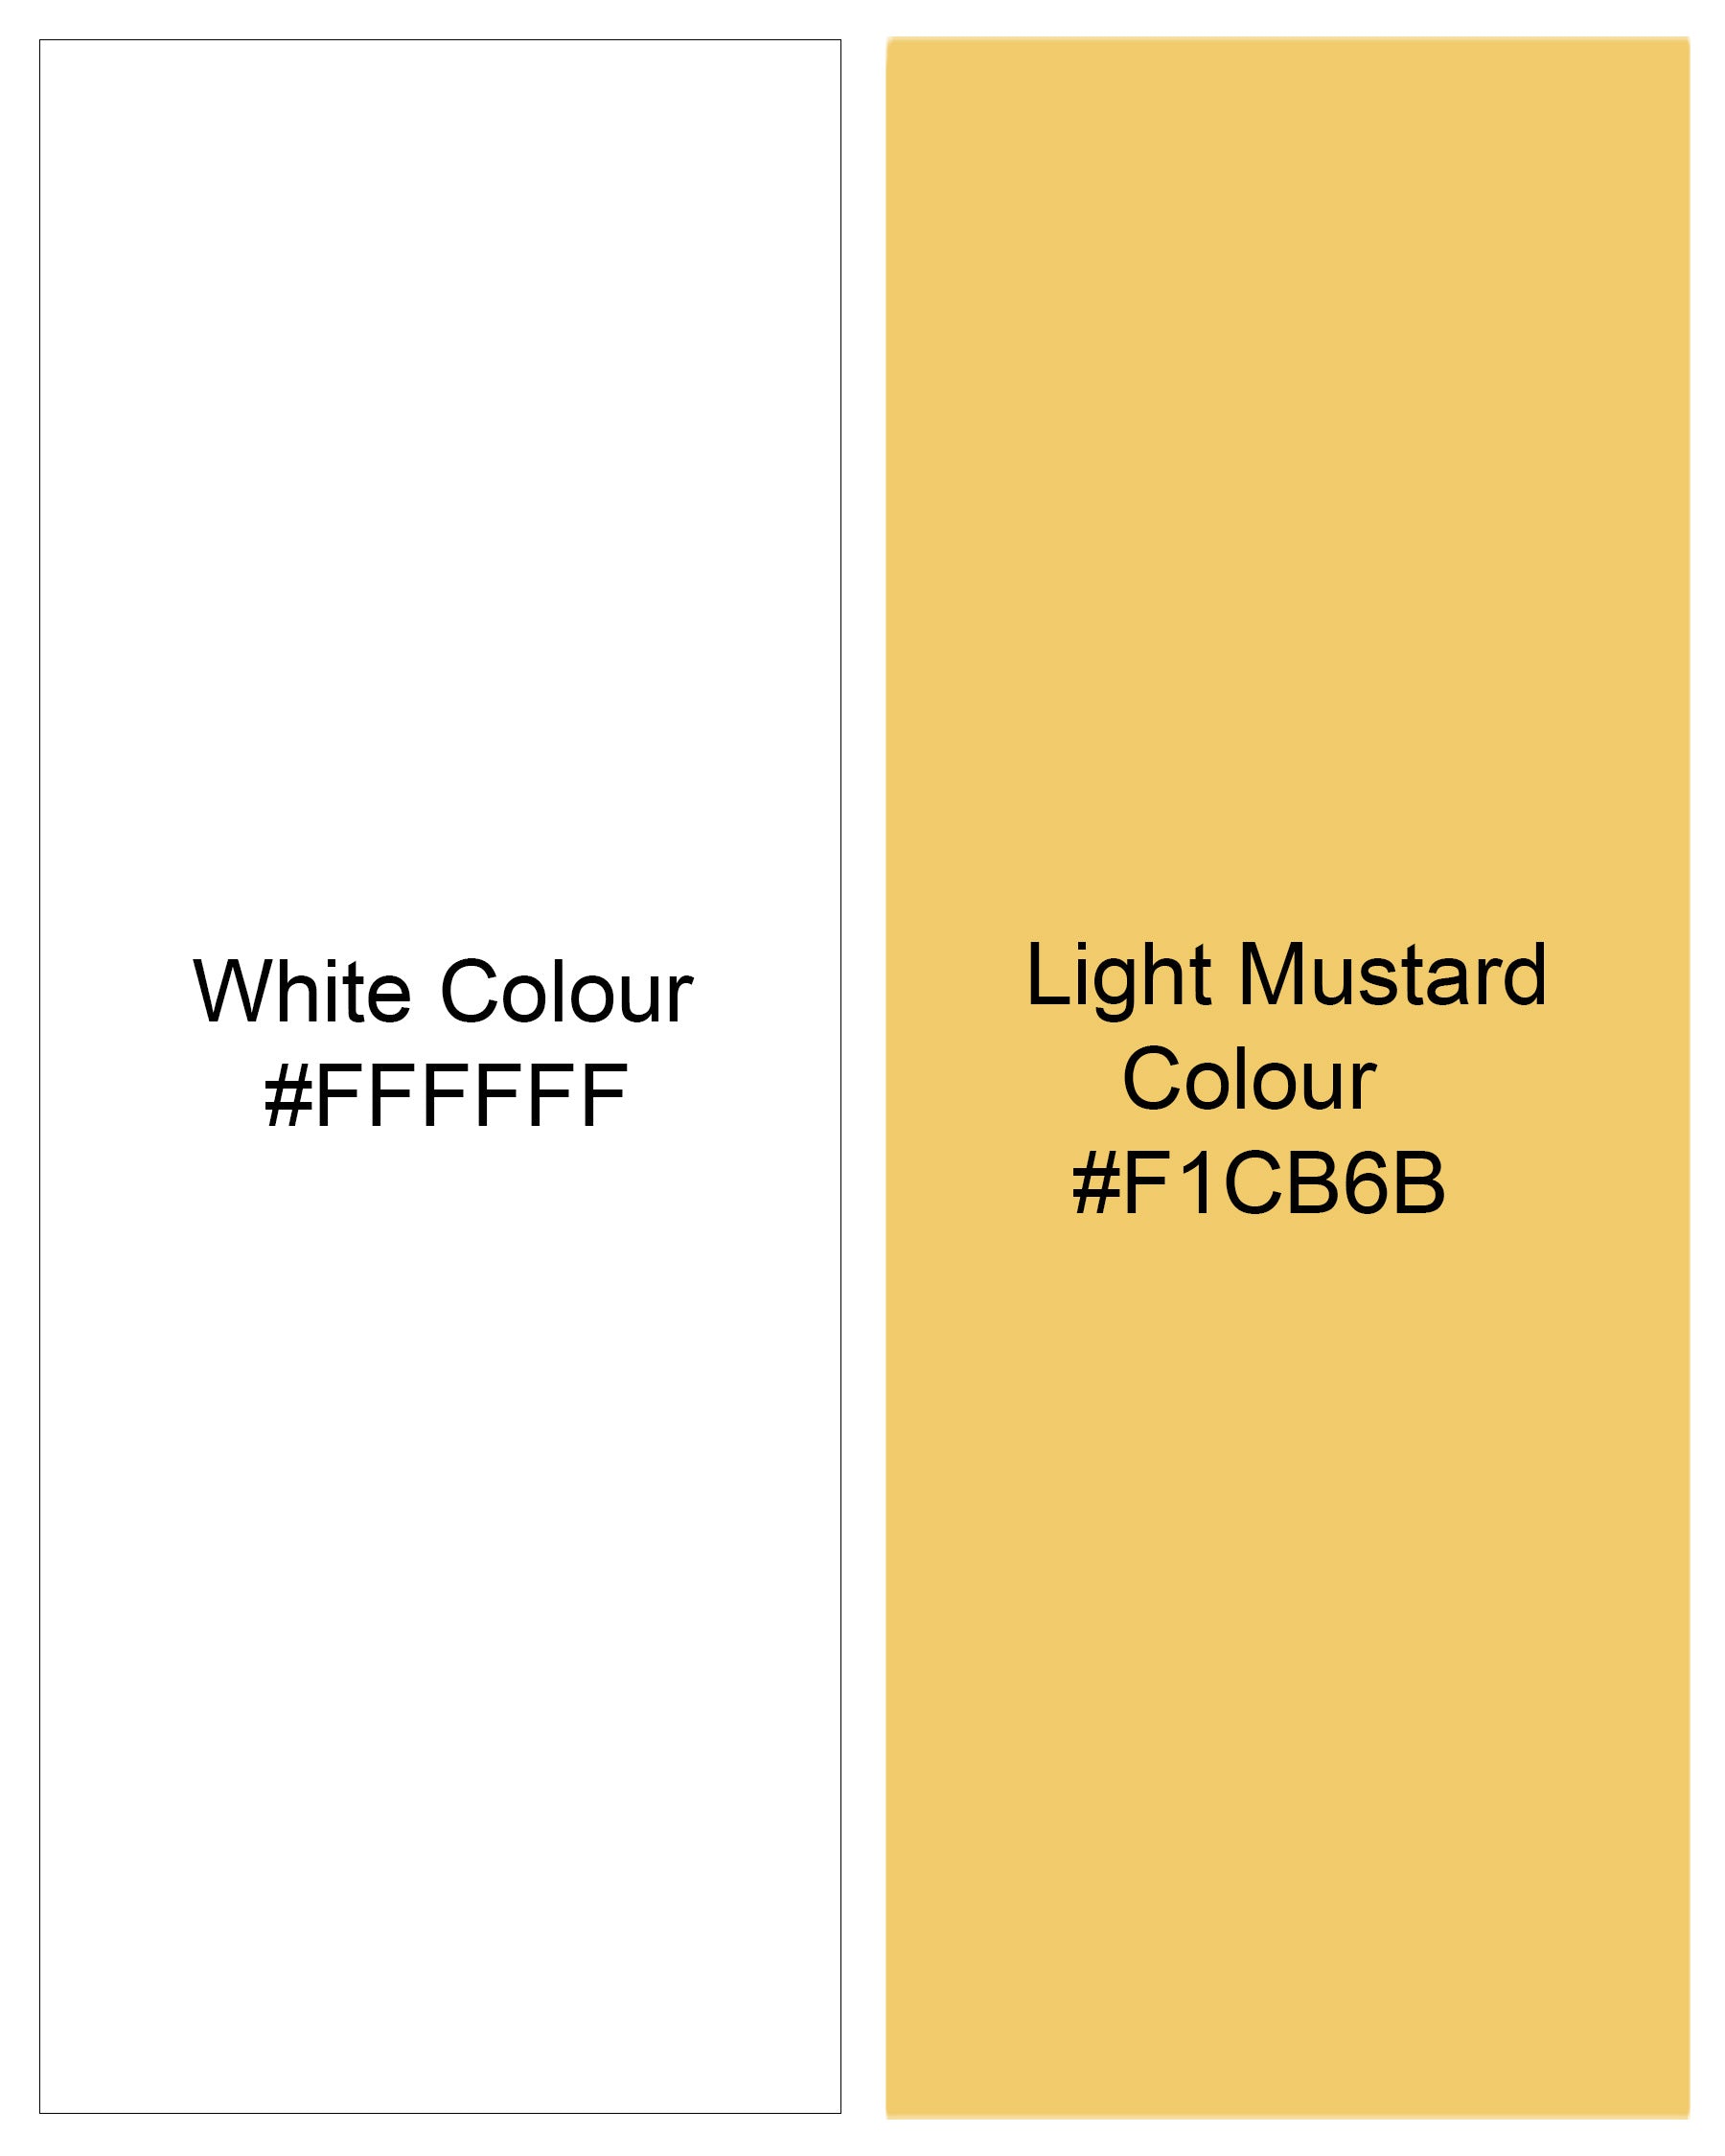 Light Mustard Yellow and White Striped Premium Cotton Shirt 7866-BD-38, 7866-BD-H-38, 7866-BD-39, 7866-BD-H-39, 7866-BD-40, 7866-BD-H-40, 7866-BD-42, 7866-BD-H-42, 7866-BD-44, 7866-BD-H-44, 7866-BD-46, 7866-BD-H-46, 7866-BD-48, 7866-BD-H-48, 7866-BD-50, 7866-BD-H-50, 7866-BD-52, 7866-BD-H-52